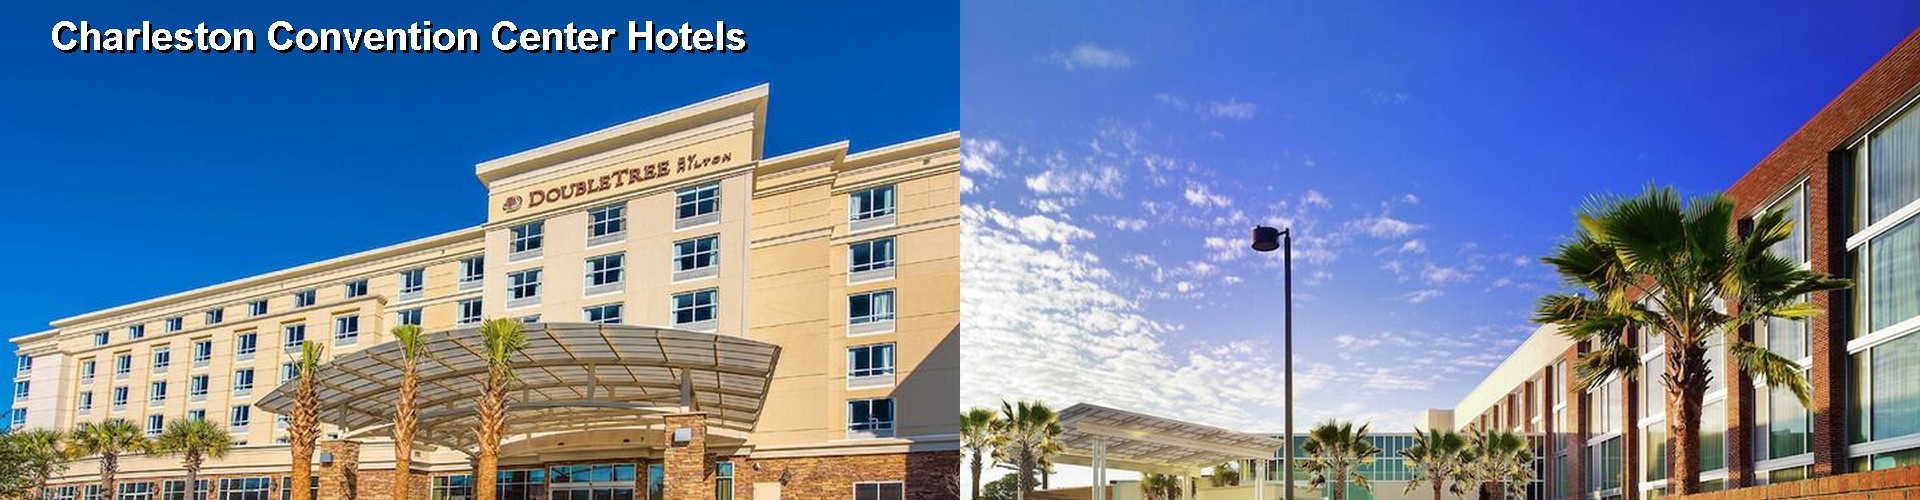 5 Best Hotels near Charleston Convention Center